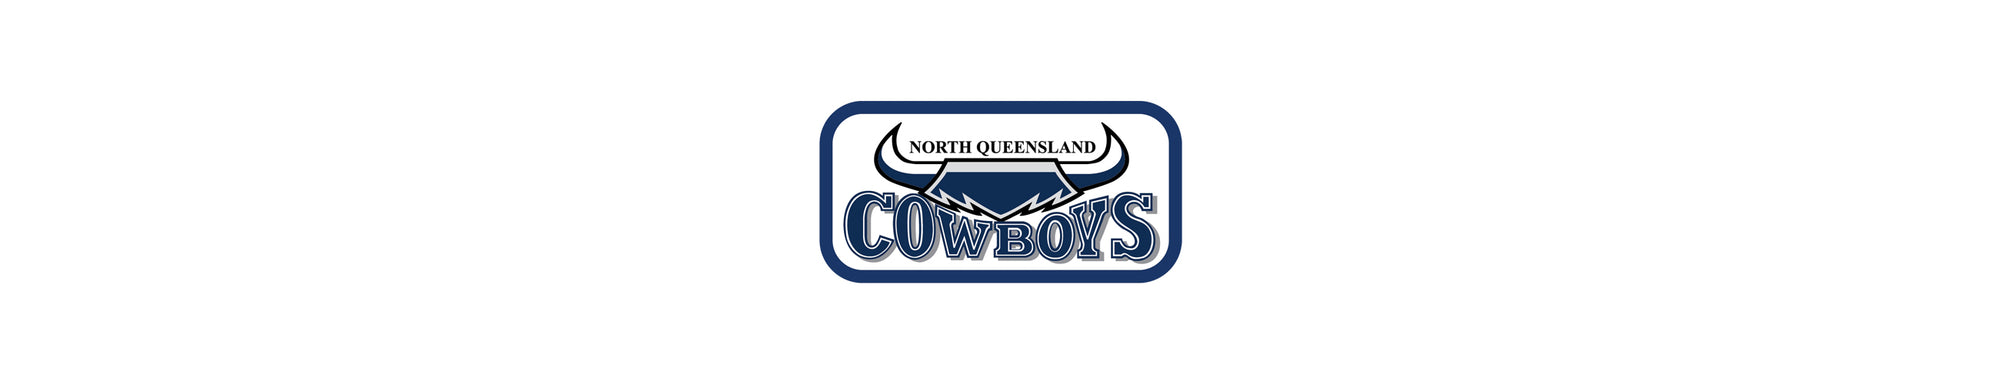 Retro North Queensland Cowboys